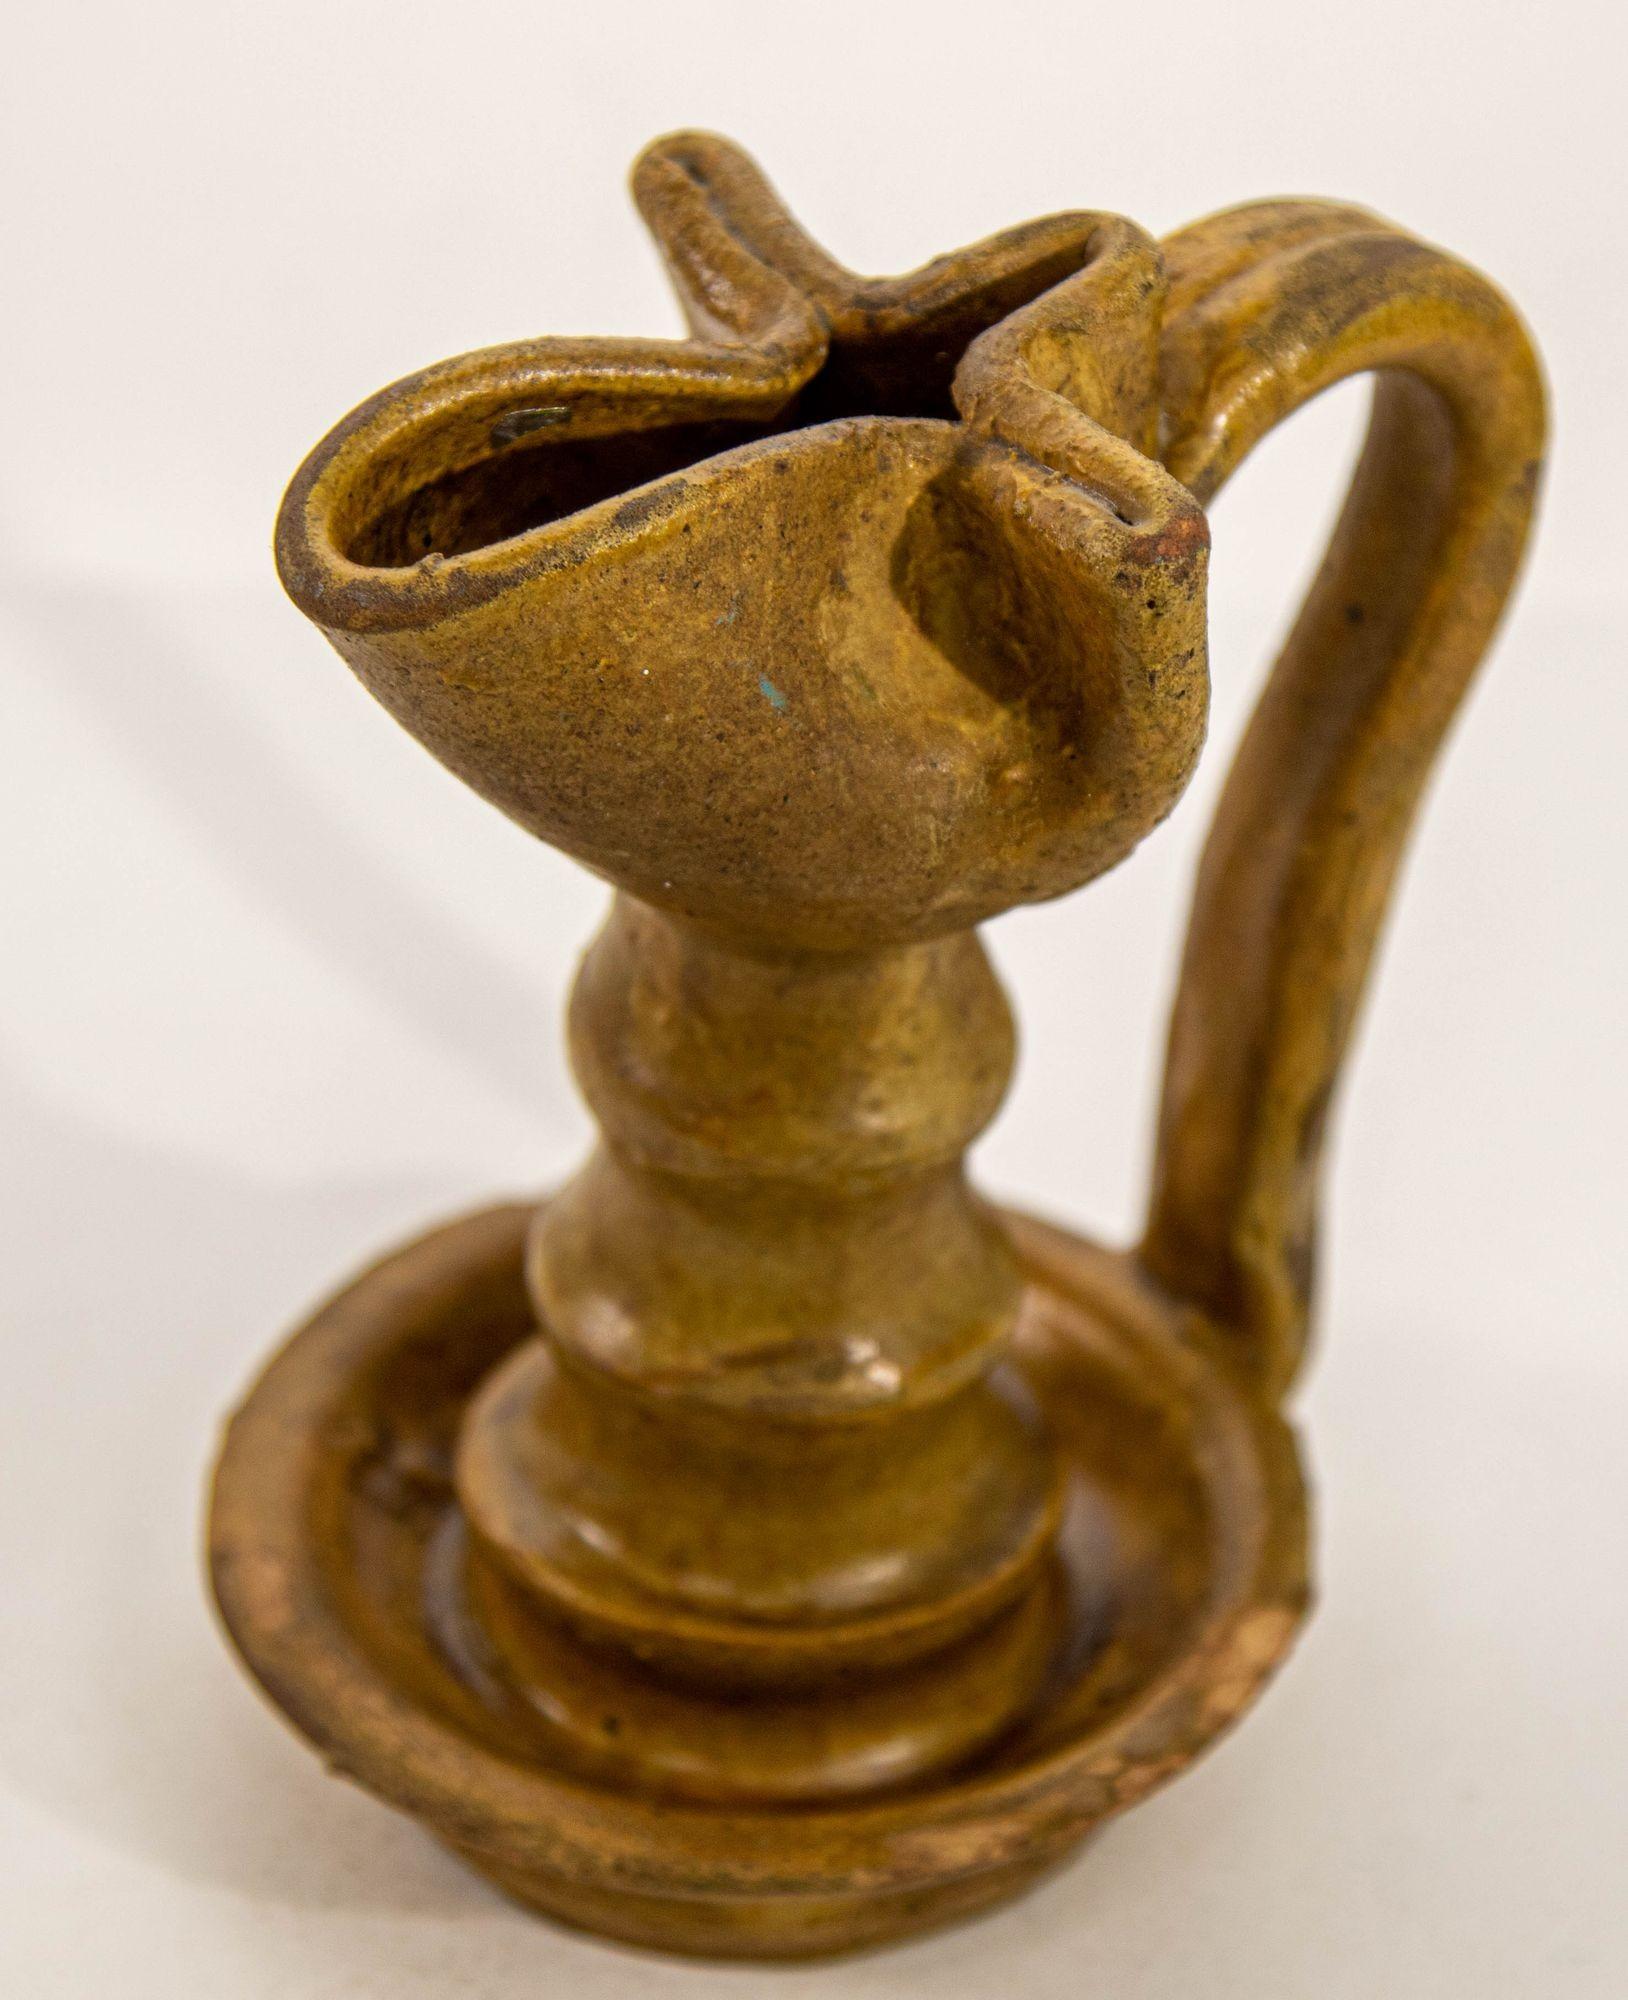 Antike islamische persische Nishapur-Stil Keramik glasiert Öllampe.
Eine atemberaubende Öllampe aus brauner Keramik im einzigartigen Nishapur-Stil.
Eine gekniffene Schale mit einer schmalen Tülle für den Docht sitzt auf einem langen, dünnen